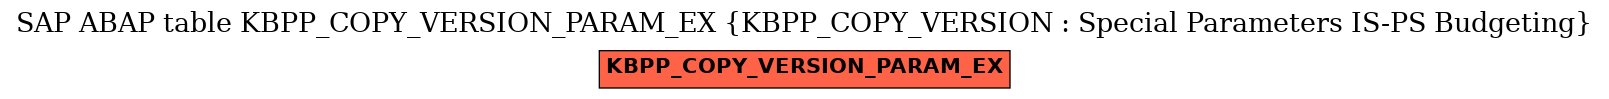 E-R Diagram for table KBPP_COPY_VERSION_PARAM_EX (KBPP_COPY_VERSION : Special Parameters IS-PS Budgeting)